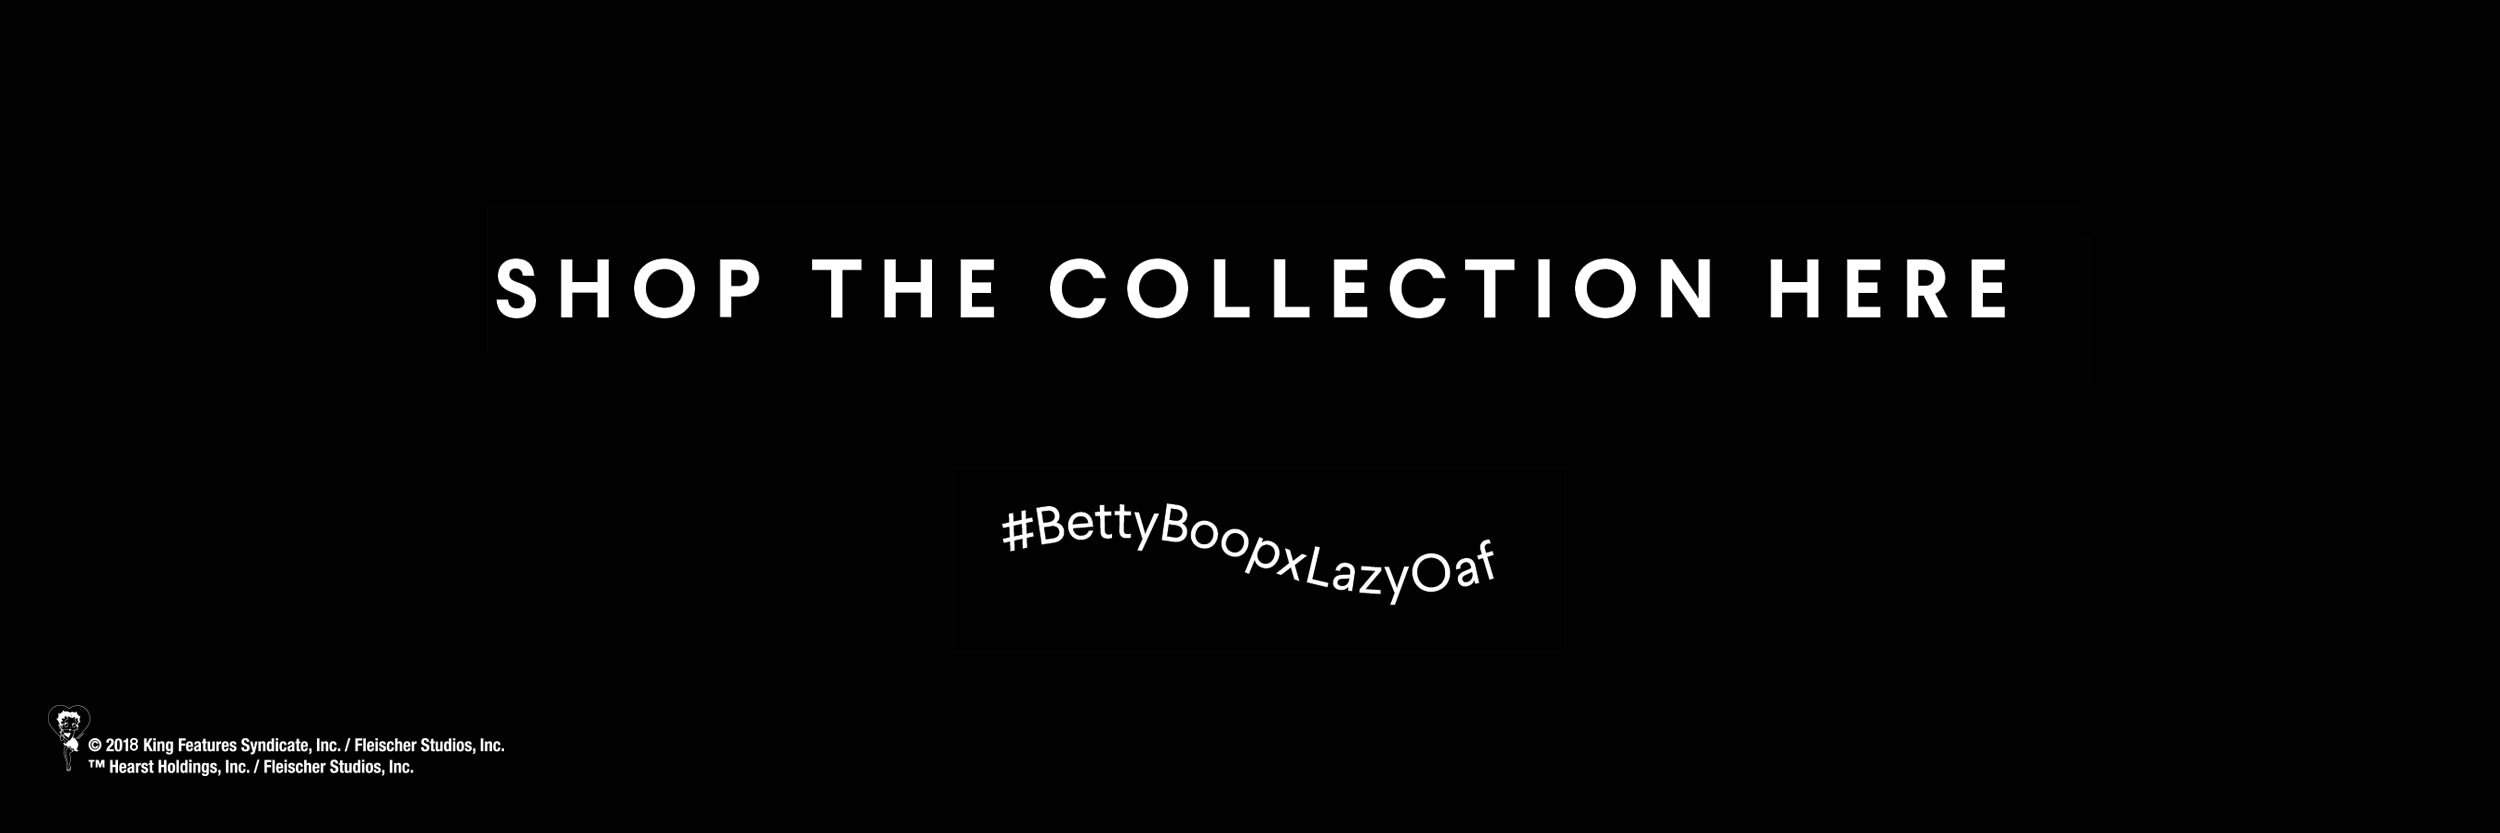 Betty Boop x Lazy Oaf